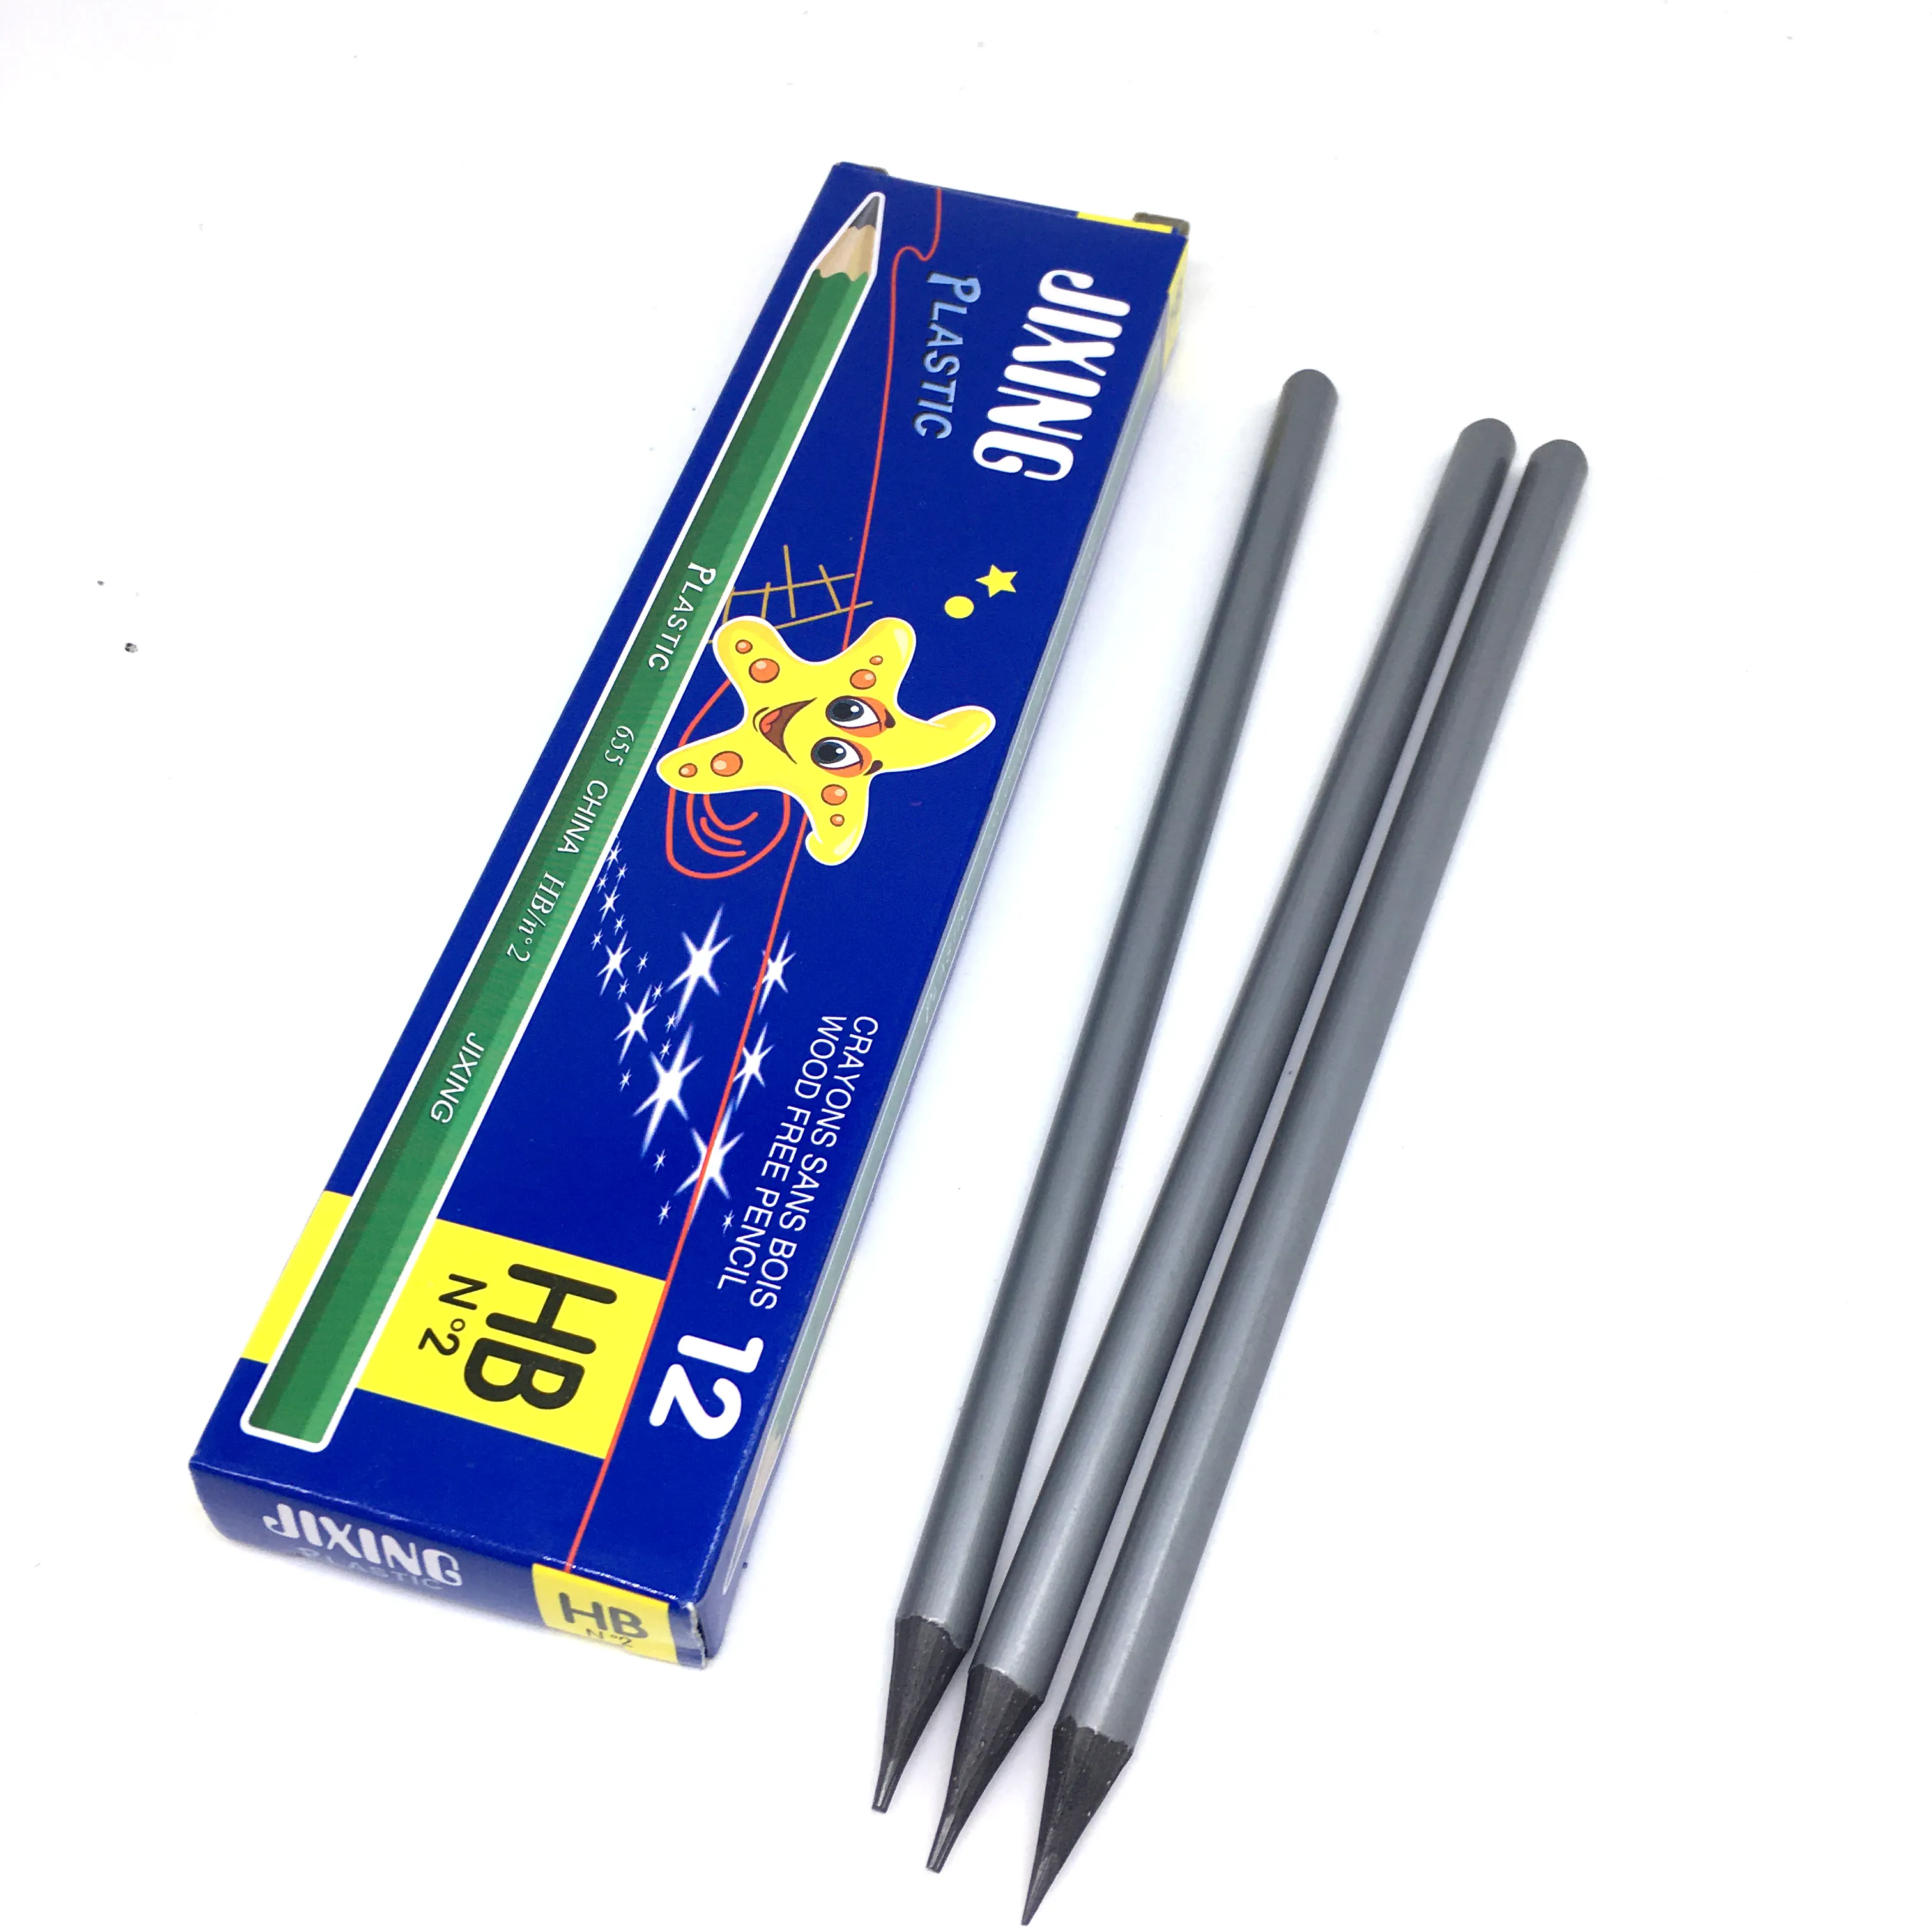 Silver Triangle Non Toxic 7" Hexagonal Plastic HB Graphite Pencil